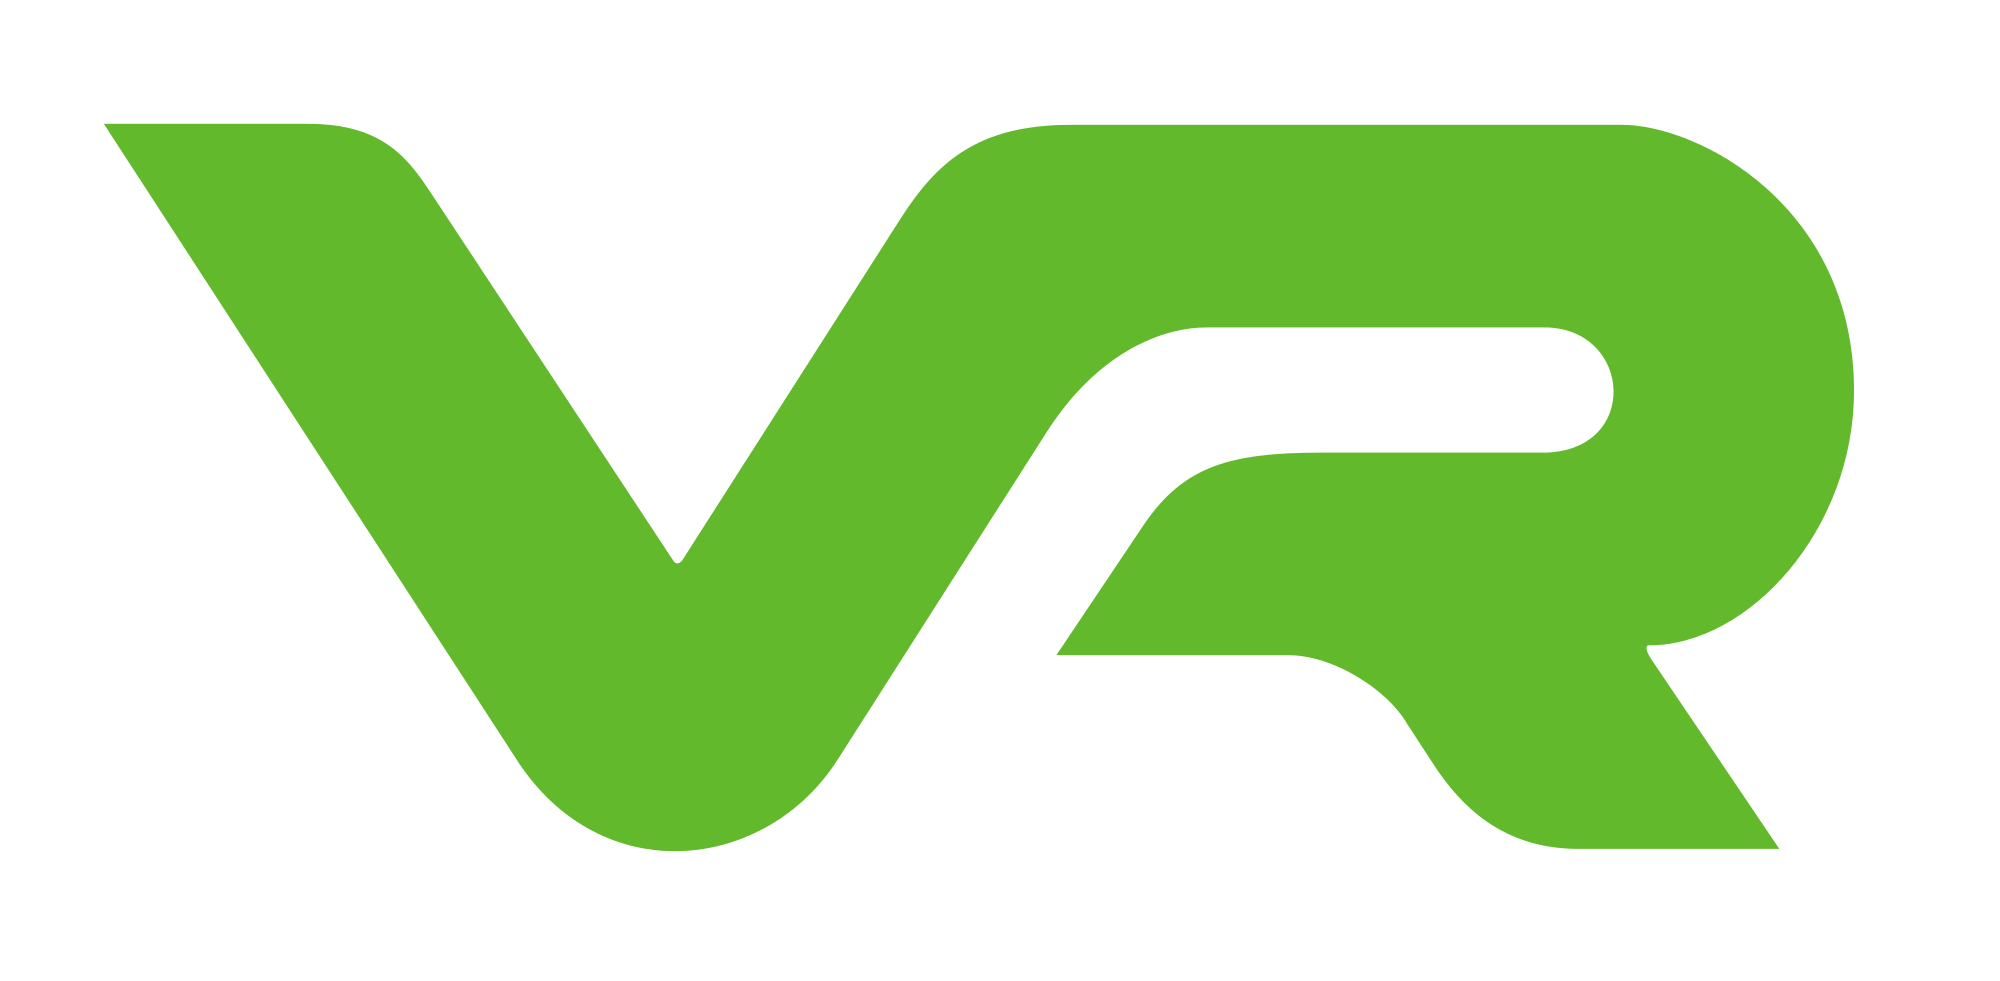 VR Logo - VR Group logo.svg